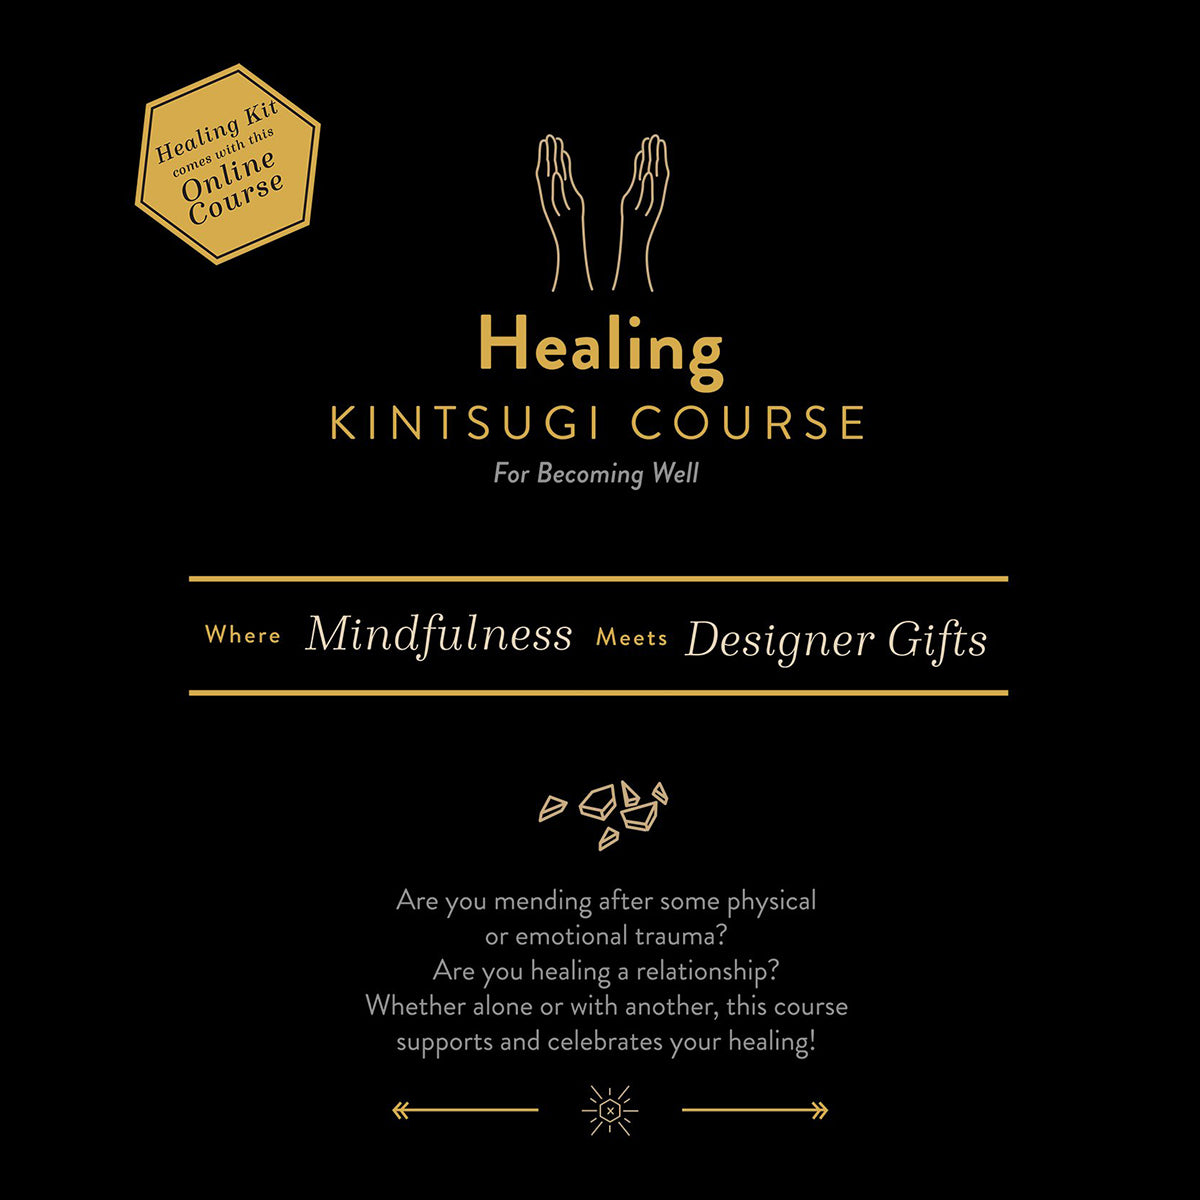 About Kintsugi Healing - Kintsugi Healing